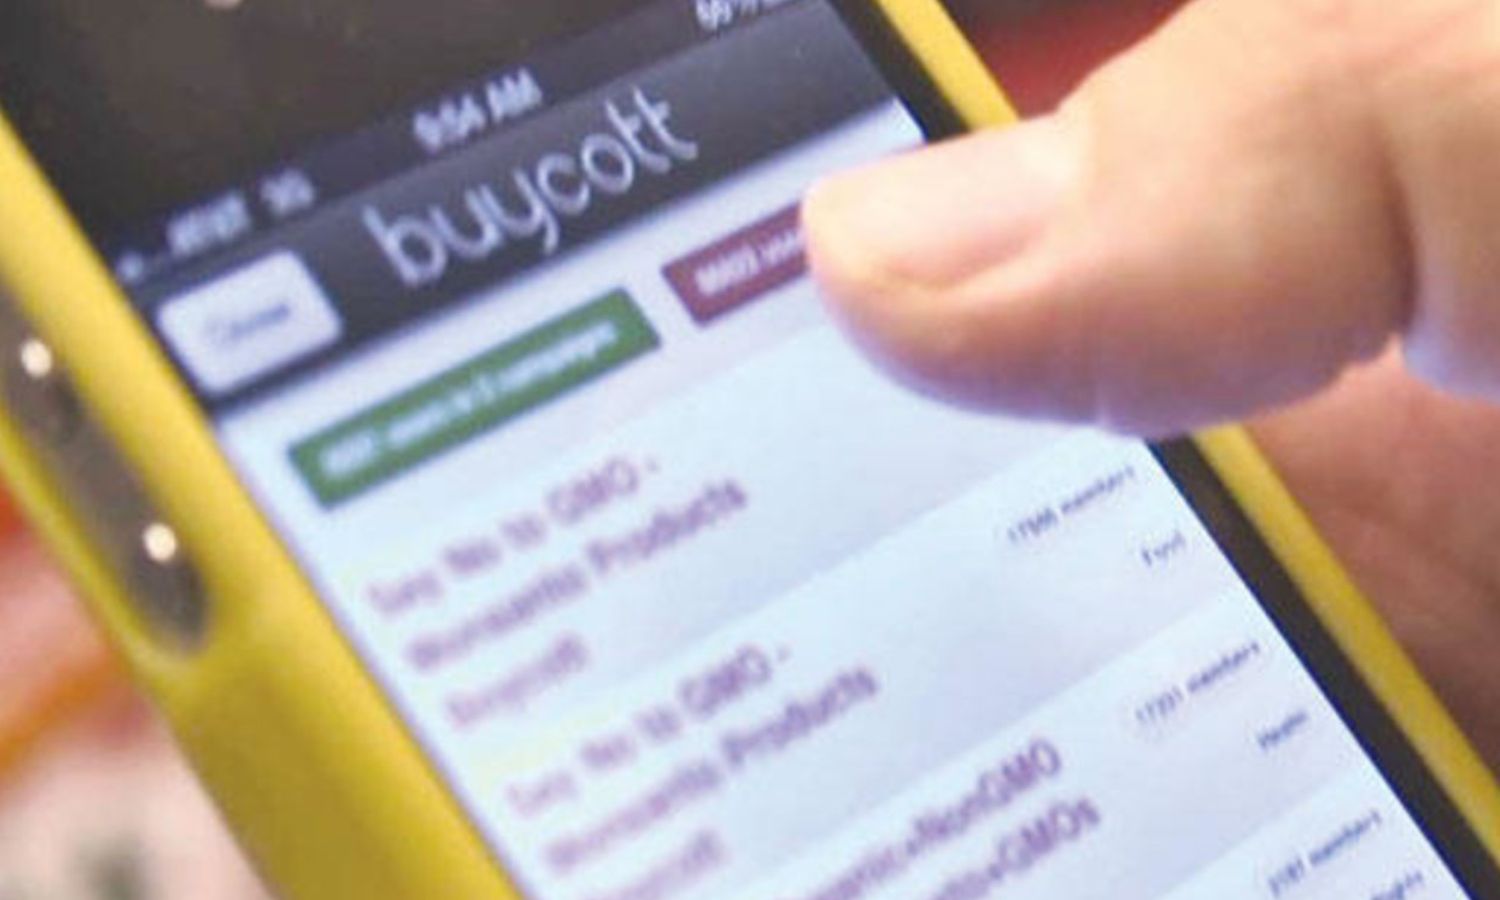 أحد المستخدمين يحمل هاتف ذكي ويظهر على شاشته واجهة تطبيق "Buycott"- 2013 (فوربس)